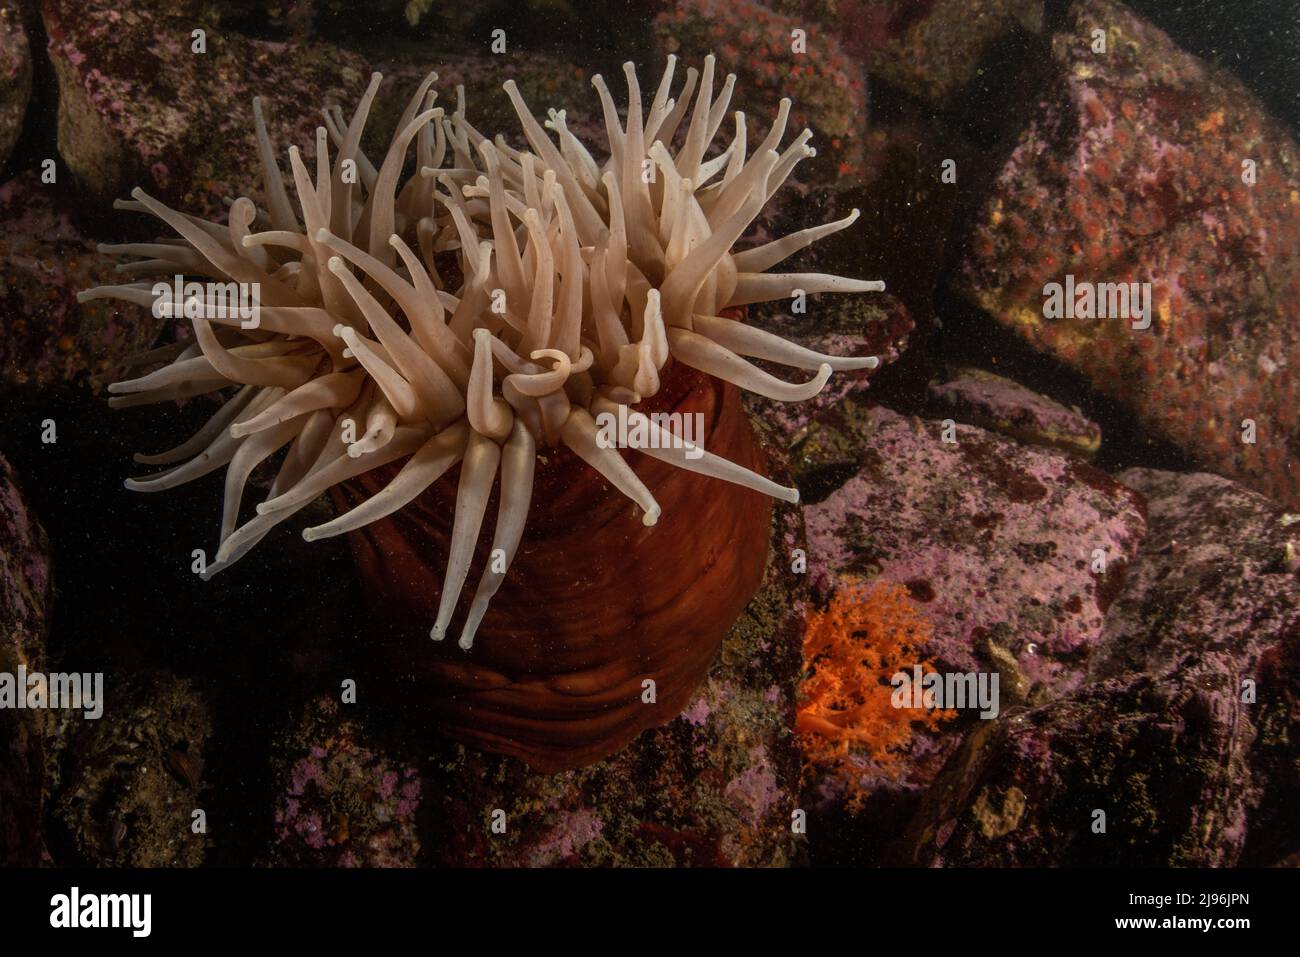 Urticina piscivora, l'anemone che mangia il pesce si siede su alcune rocce sott'acqua nell'oceano Pacifico a Monterey Bay, California, USA, Nord America. Foto Stock